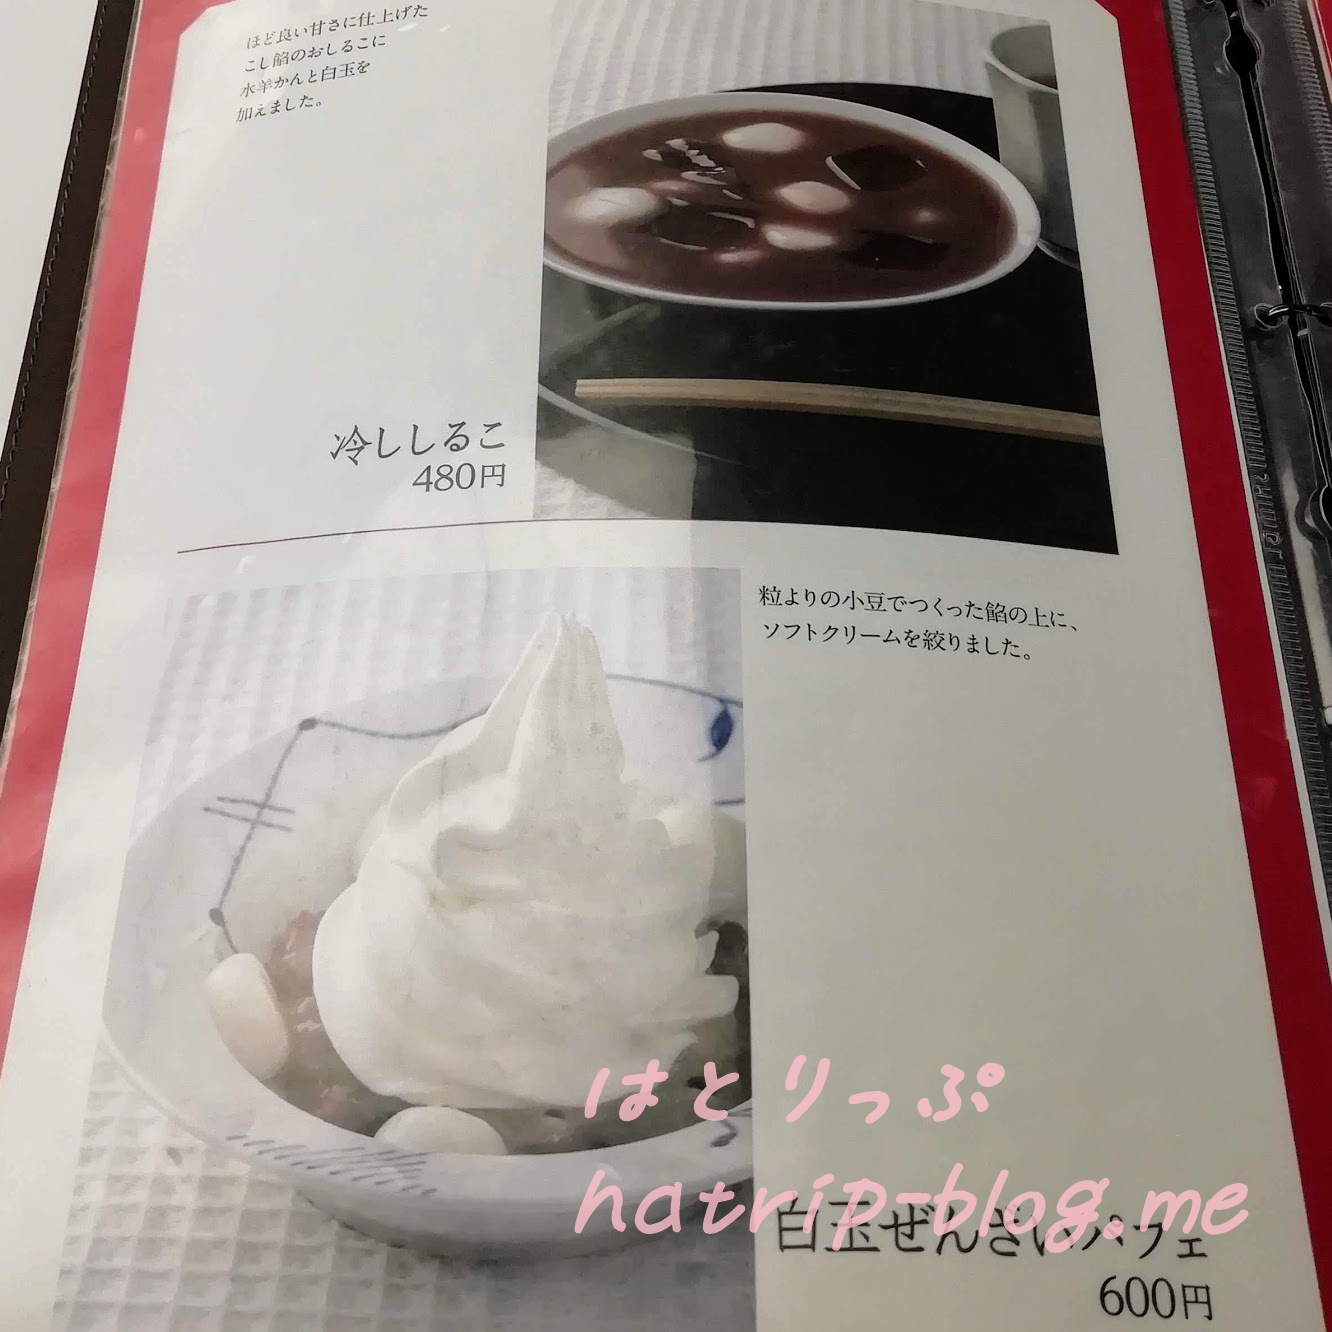 北海道 六花亭 札幌本店 喫茶室 カフェ メニュー 冷やししるこ 白玉ぜんざいパフェ